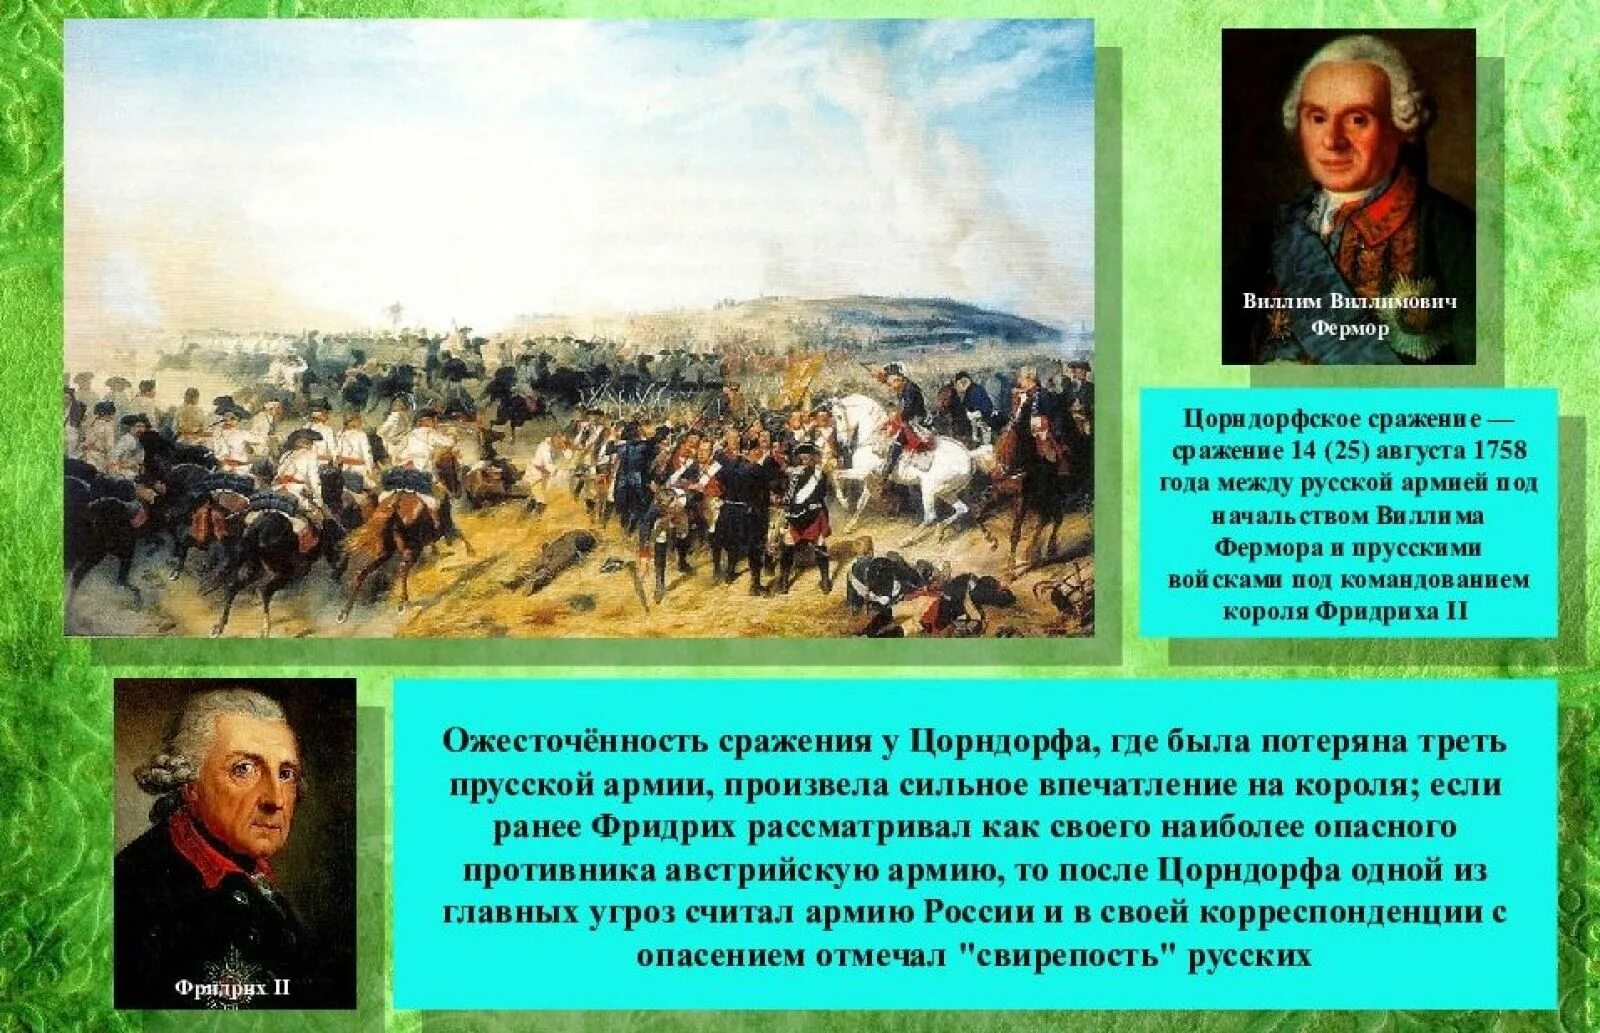 В результате семилетней войны россия получила. Участники семилетней войны 1756-1763. Россия в семилетней войне 1756 1763 года. Участие русских в семилетней войне.